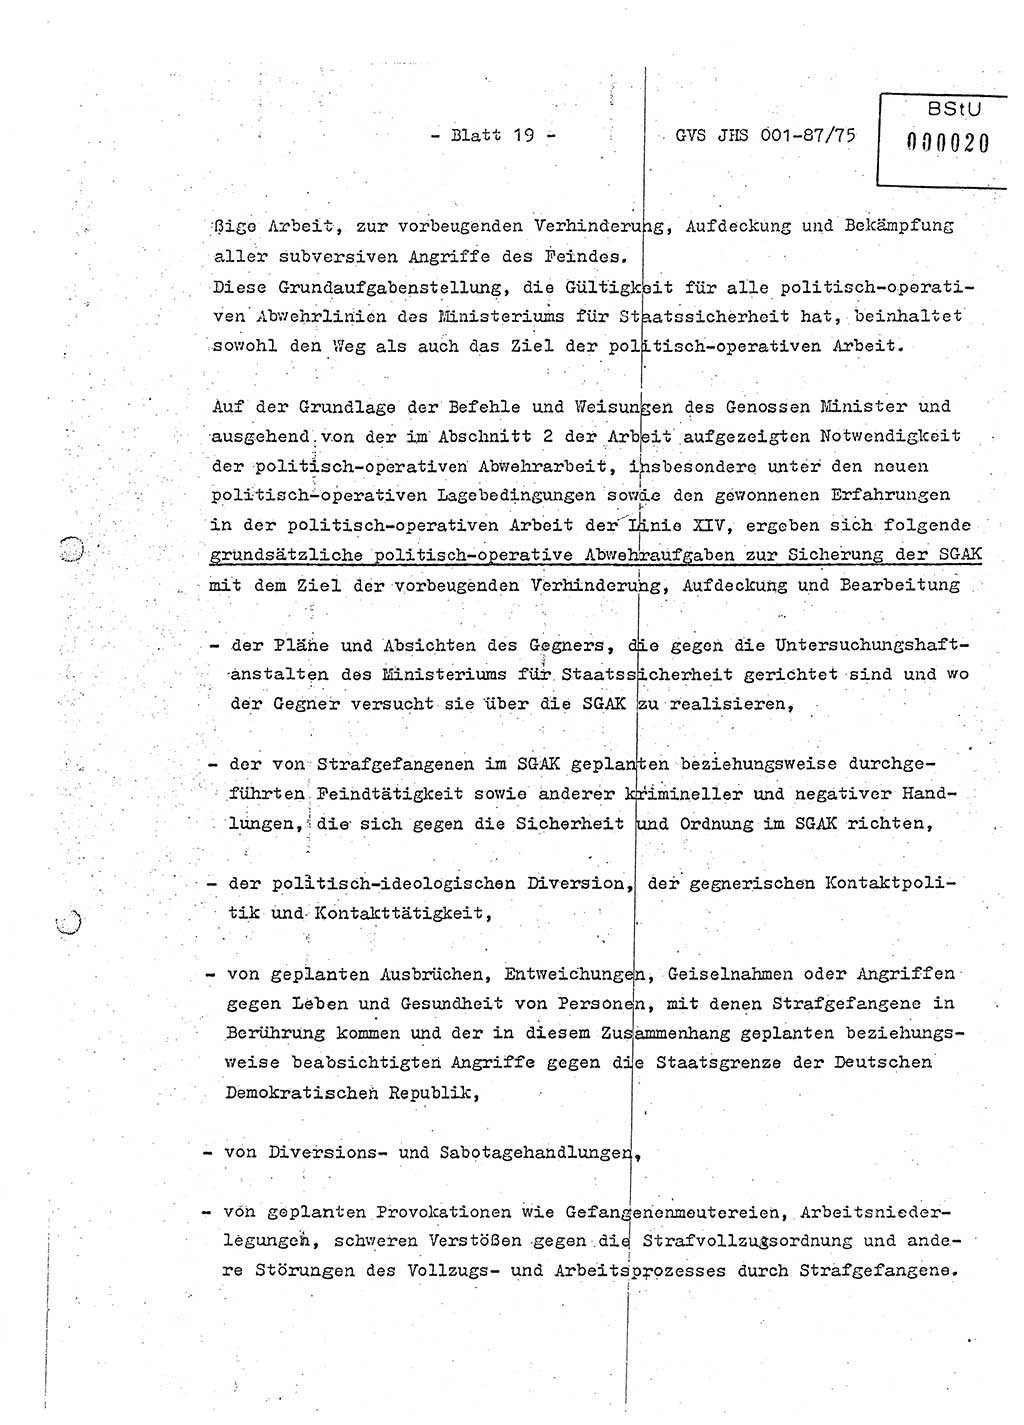 Diplomarbeit Hauptmann Volkmar Heinz (Abt. ⅩⅣ), Oberleutnant Lothar Rüdiger (BV Lpz. Abt. Ⅺ), Ministerium für Staatssicherheit (MfS) [Deutsche Demokratische Republik (DDR)], Juristische Hochschule (JHS), Geheime Verschlußsache (GVS) o001-87/75, Potsdam 1975, Seite 19 (Dipl.-Arb. MfS DDR JHS GVS o001-87/75 1975, S. 19)